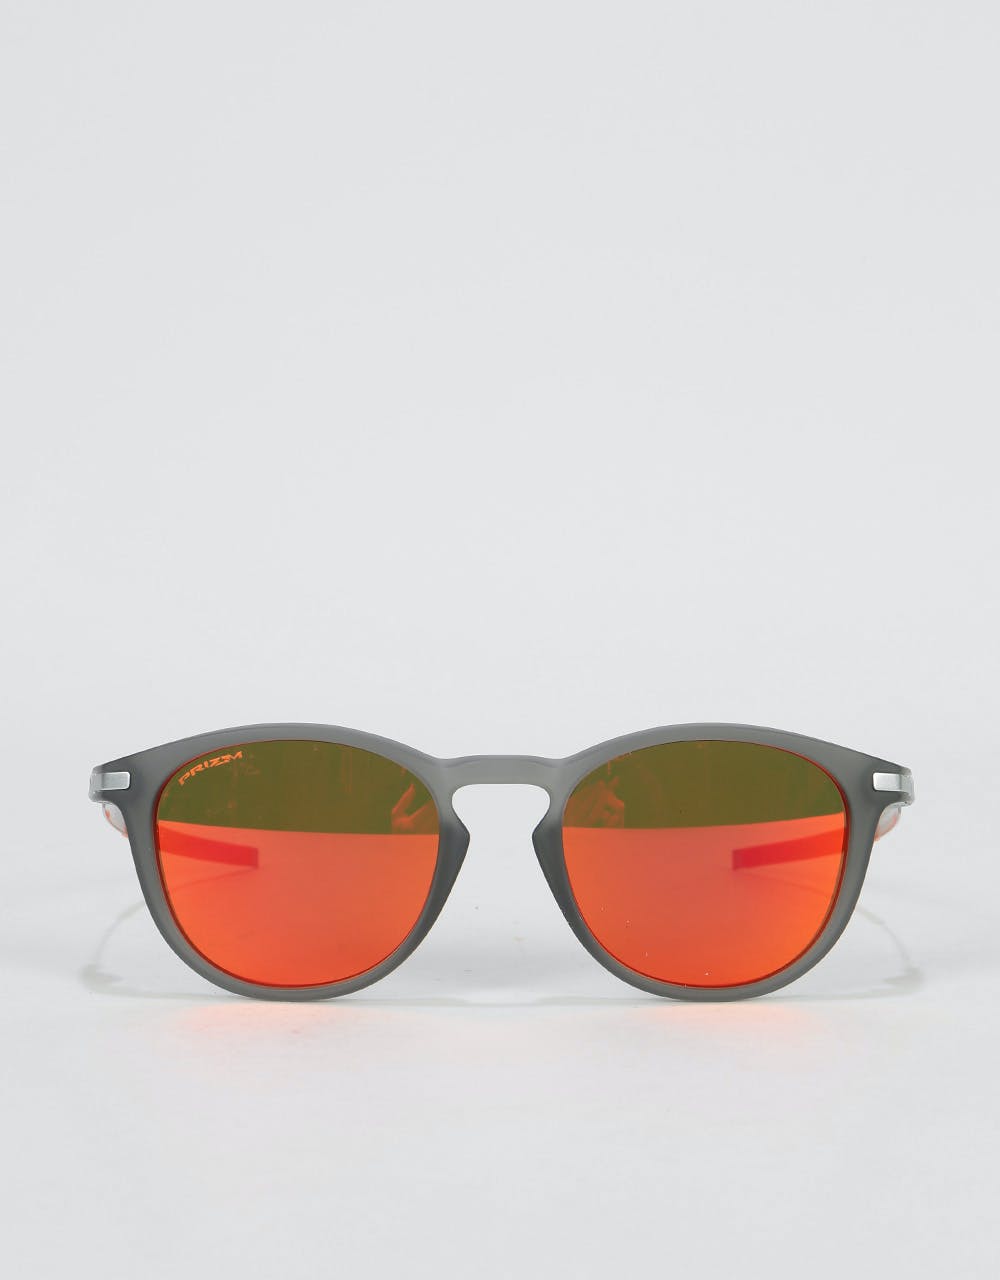 Oakley Pitchman R Sunglasses - Matte Grey Smoke (Prizm Ruby Lens)